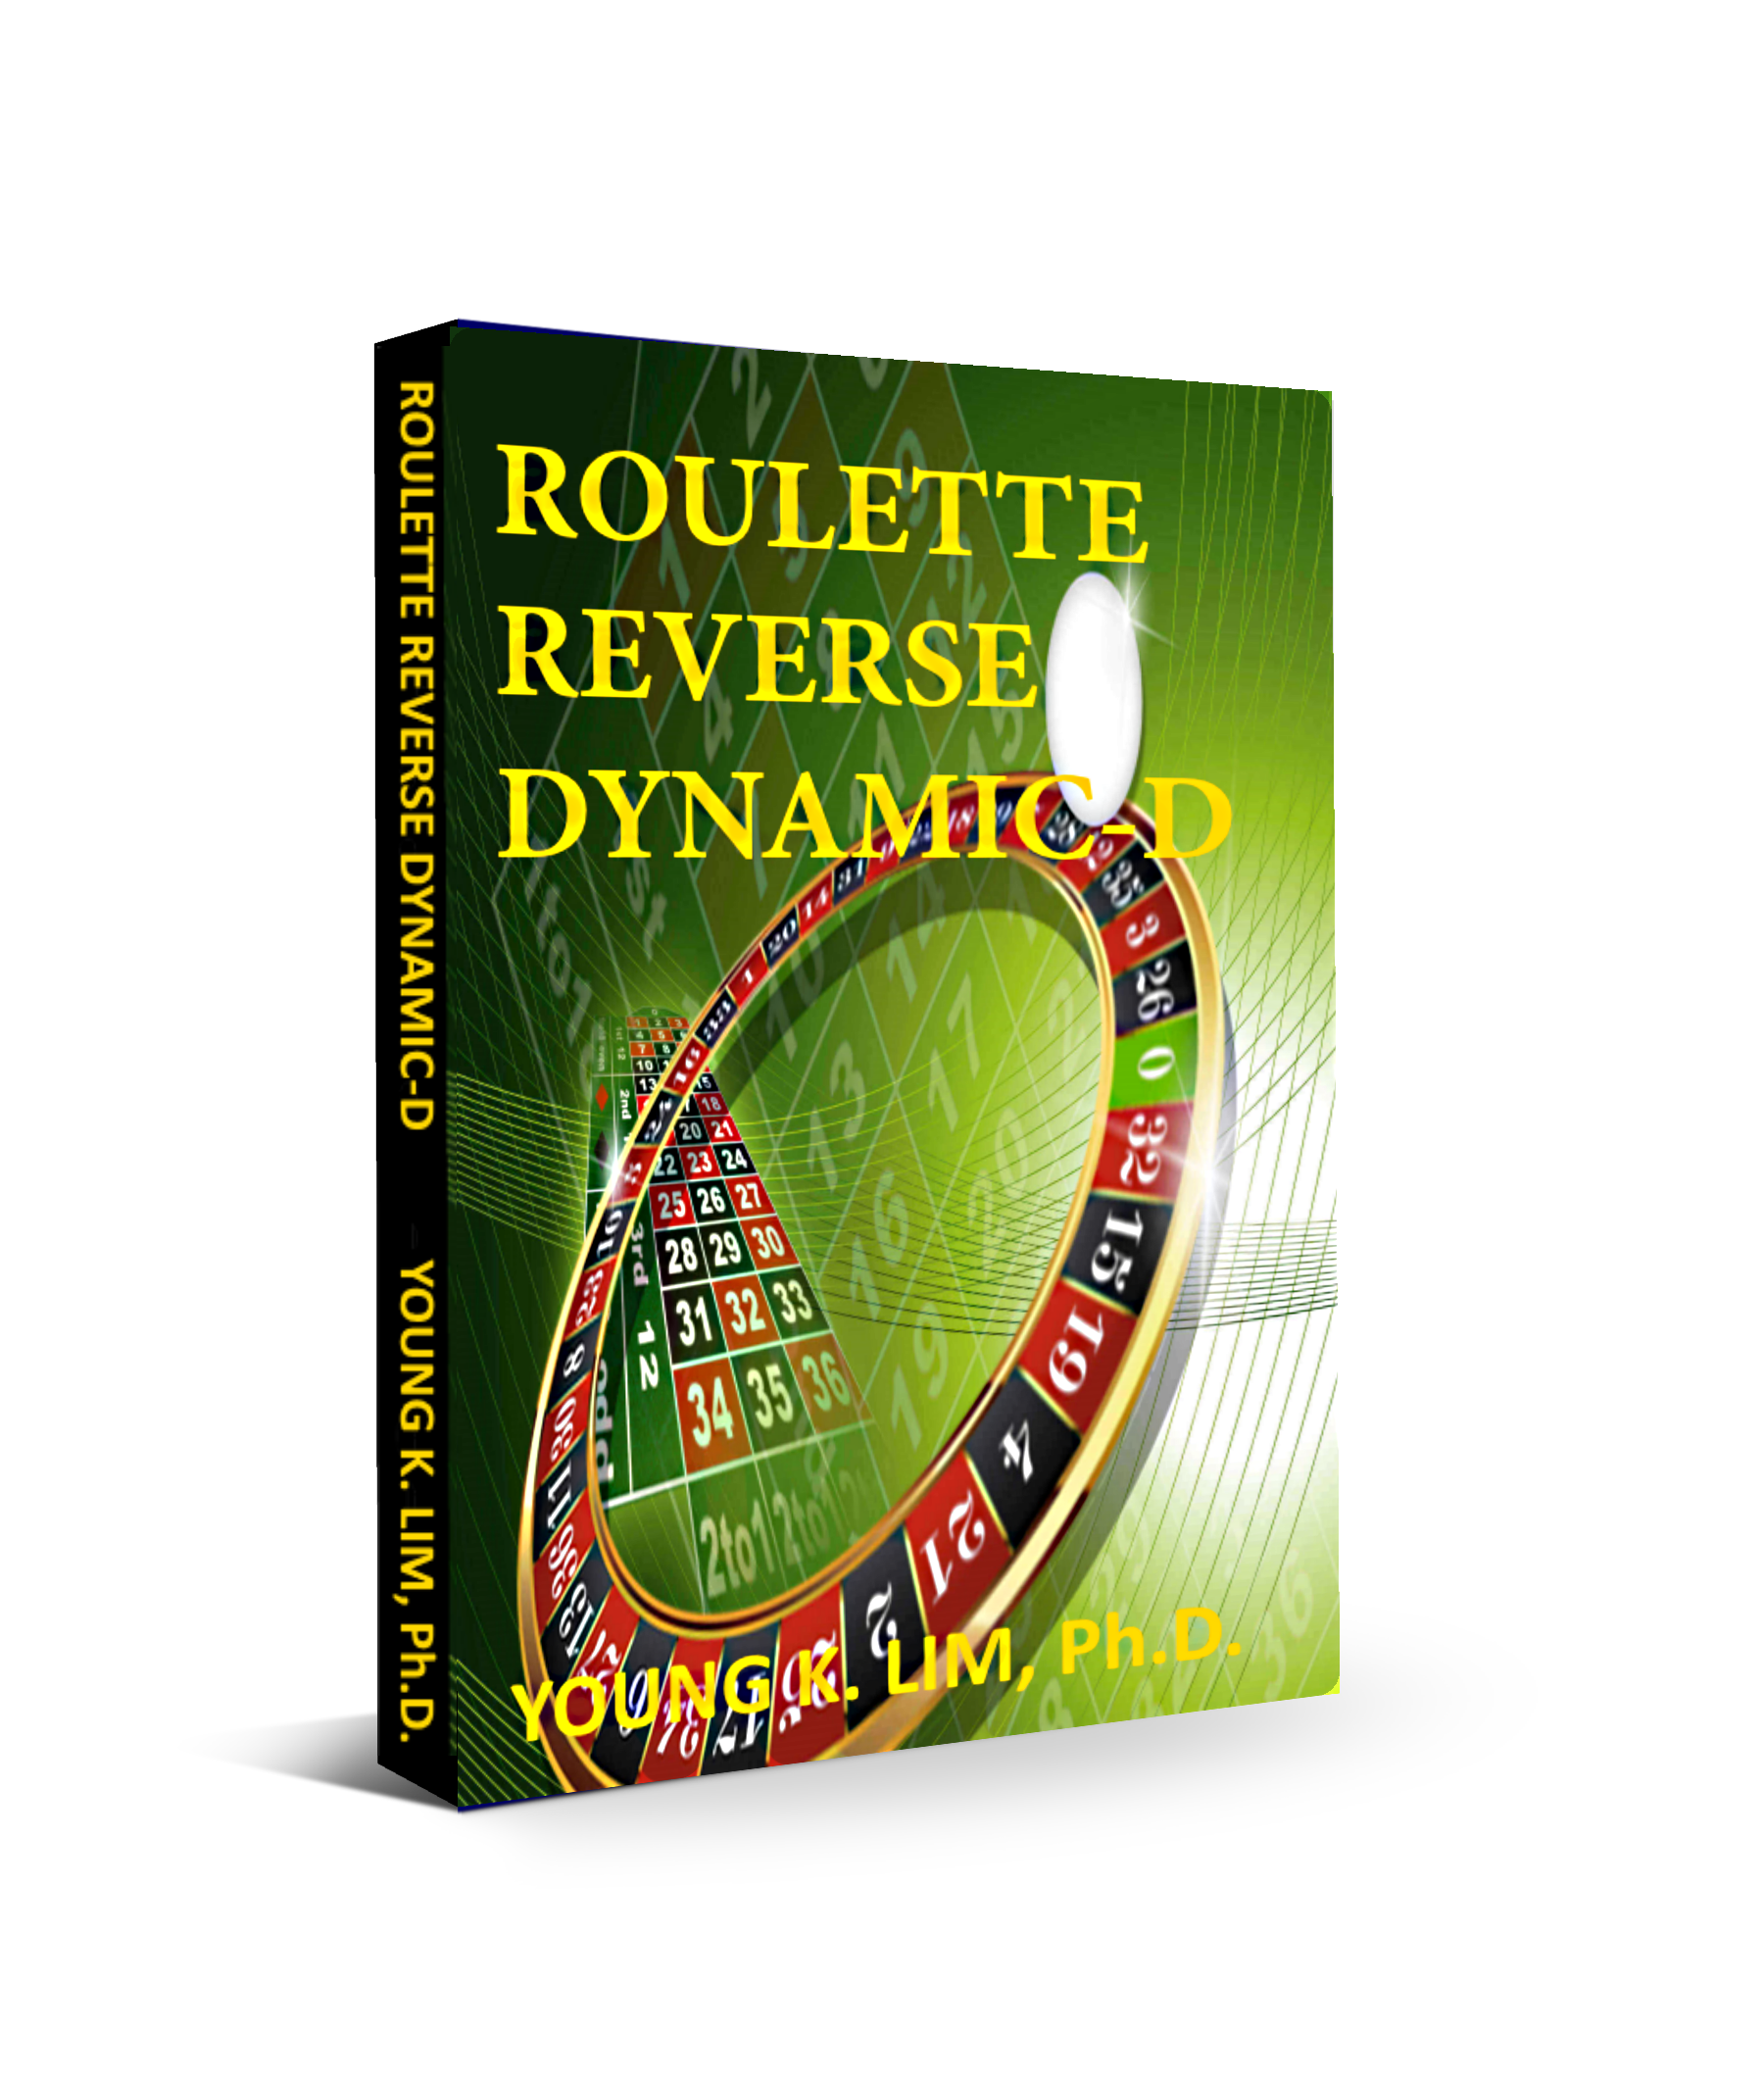 Roulette Reverse Dynamic-D